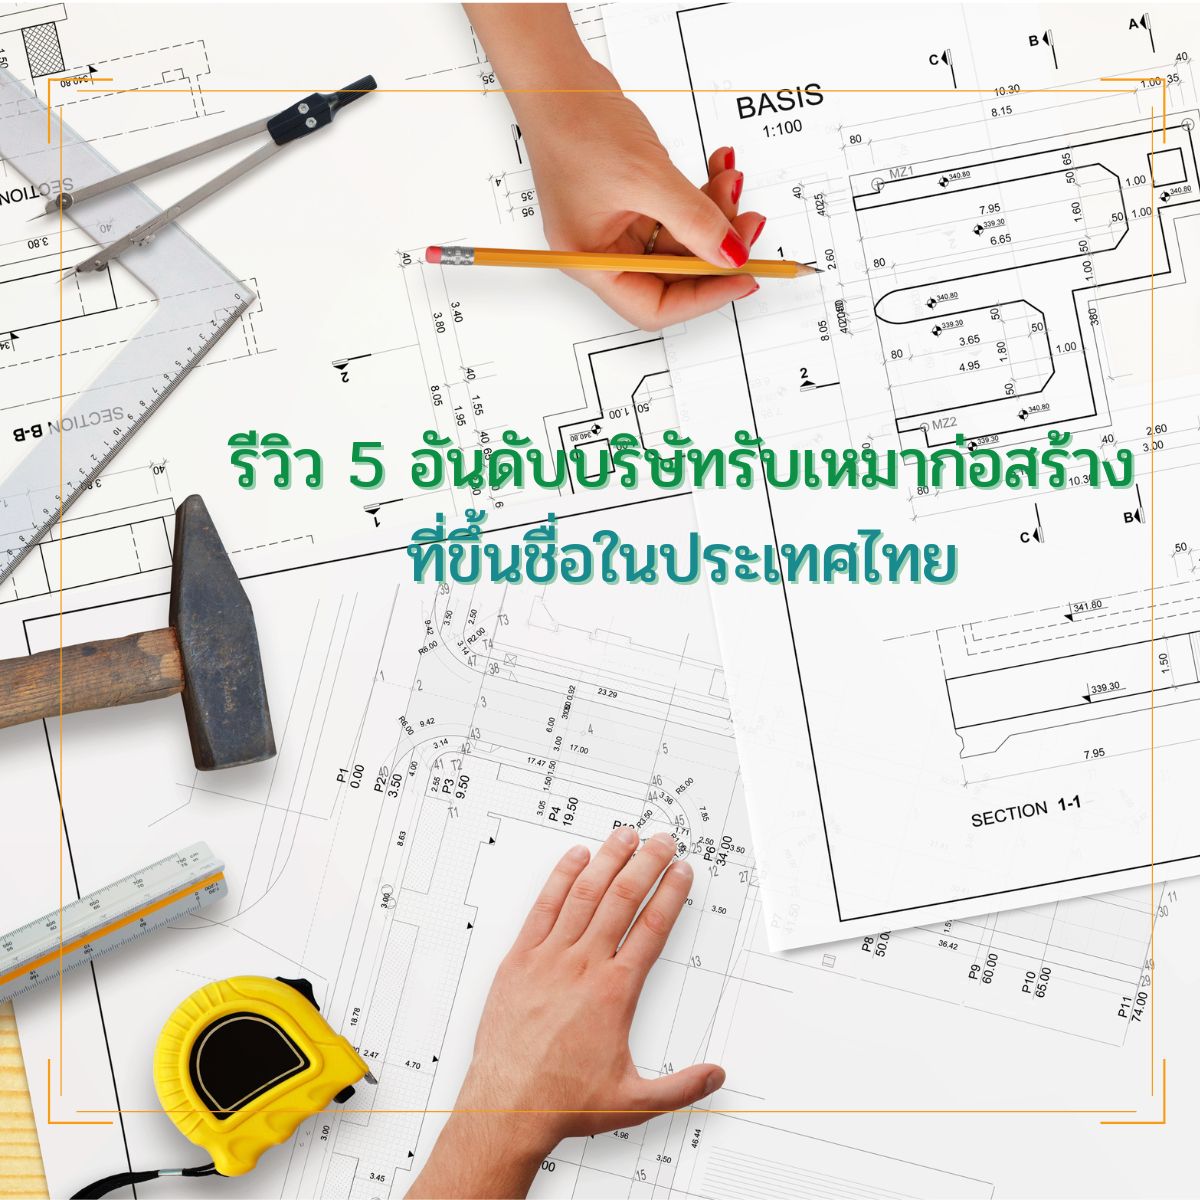 รีวิว 5 อันดับบริษัทรับเหมาก่อสร้าง ที่ขึ้นชื่อในประเทศไทย